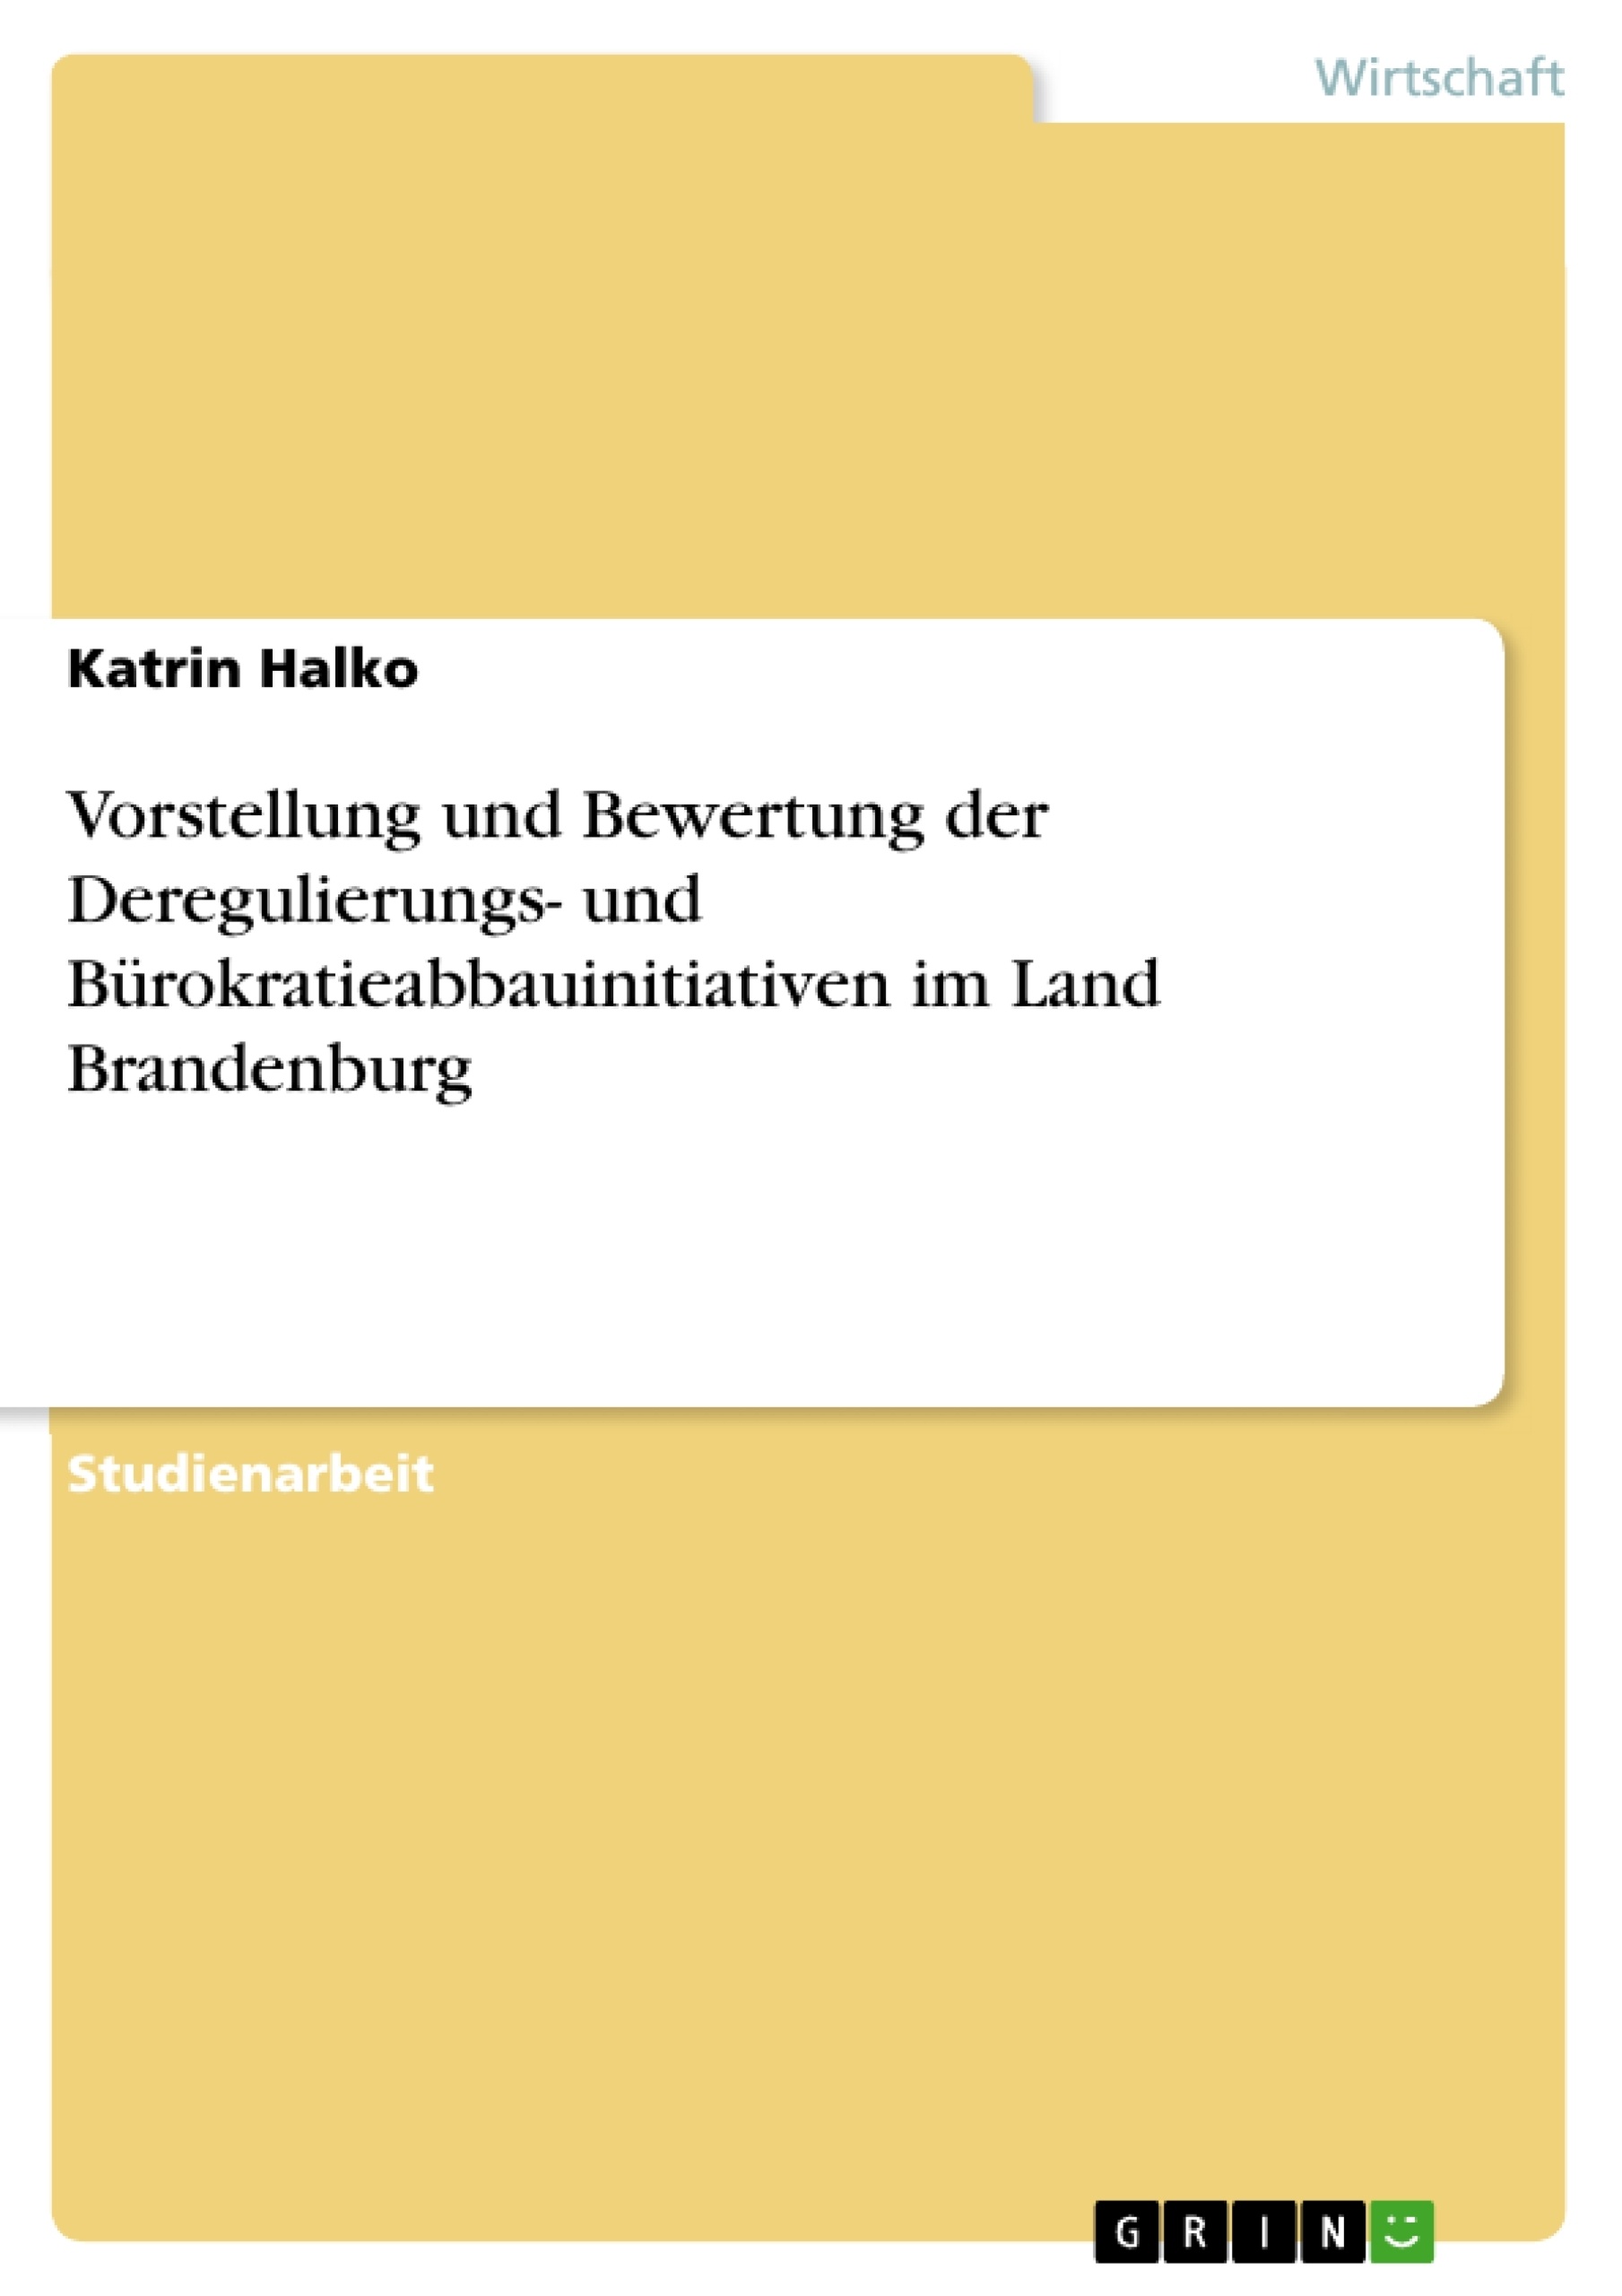 Título: Vorstellung und Bewertung der Deregulierungs- und Bürokratieabbauinitiativen im Land Brandenburg